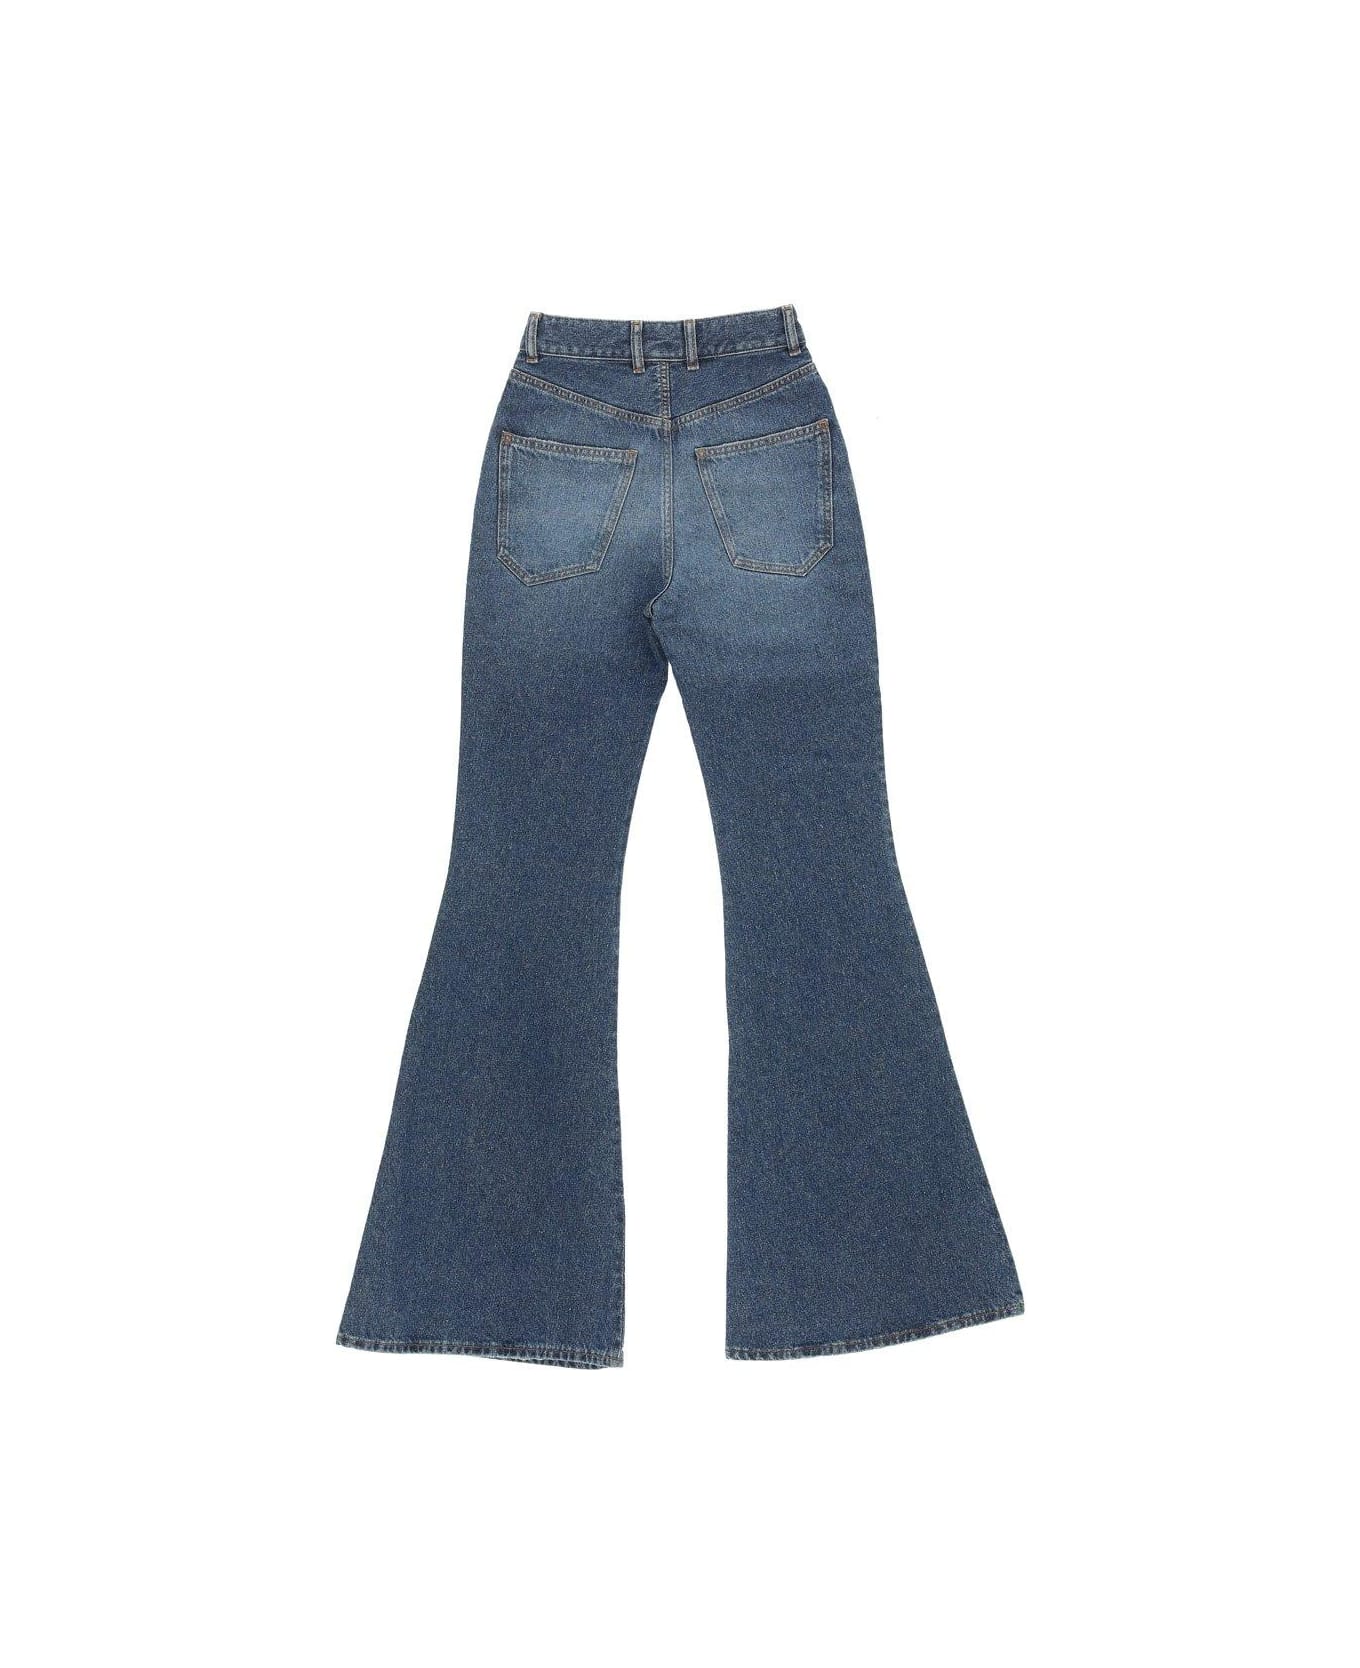 Chloé High Waist Flared Jeans - DENIM